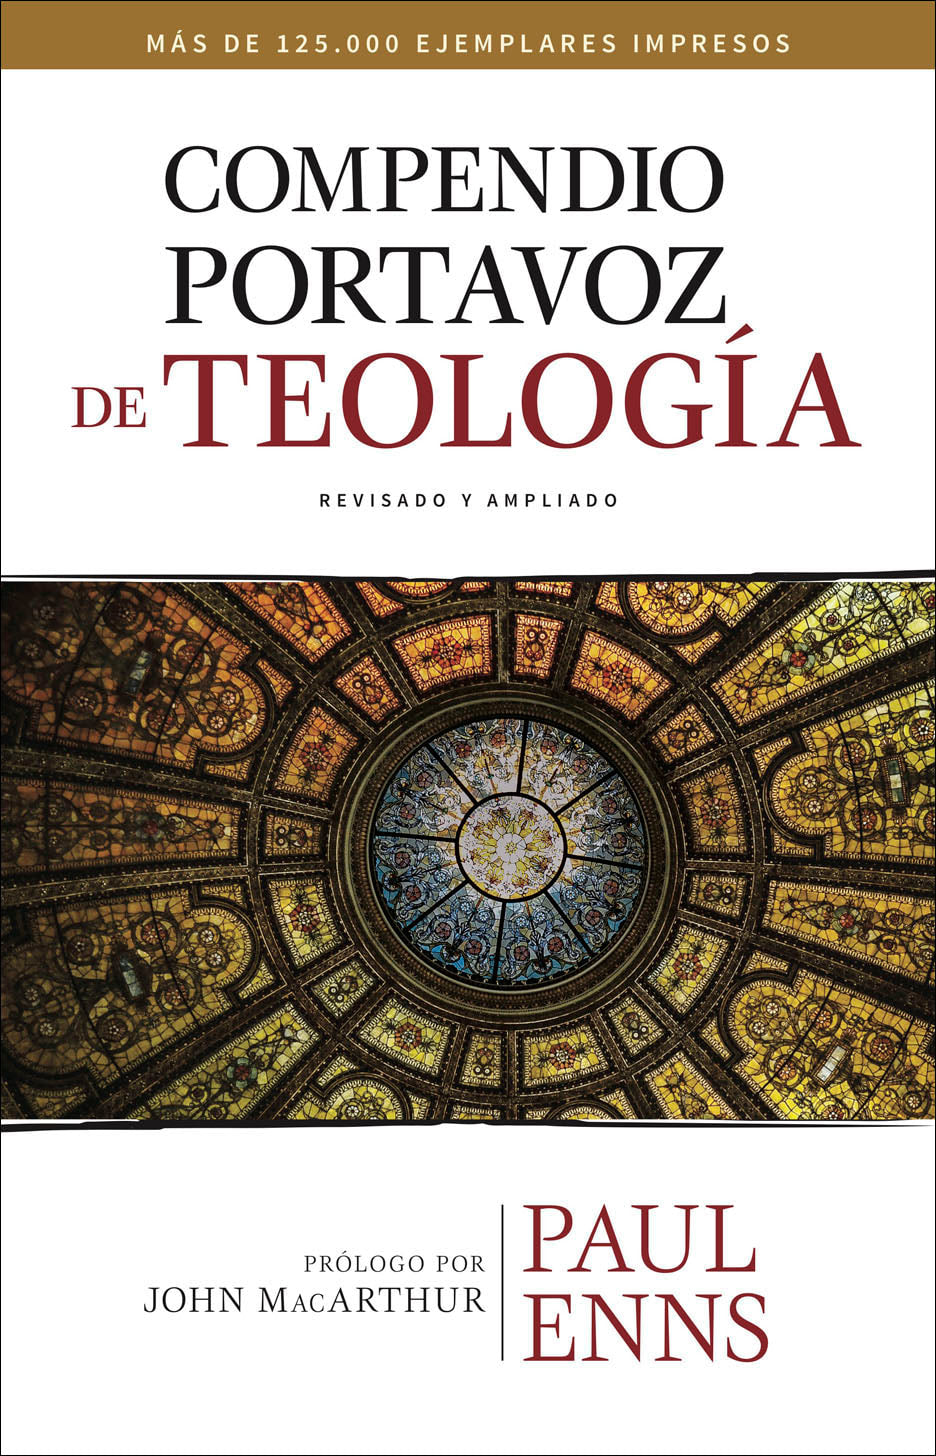 Compendio Portavoz de Teología - Paul Enns